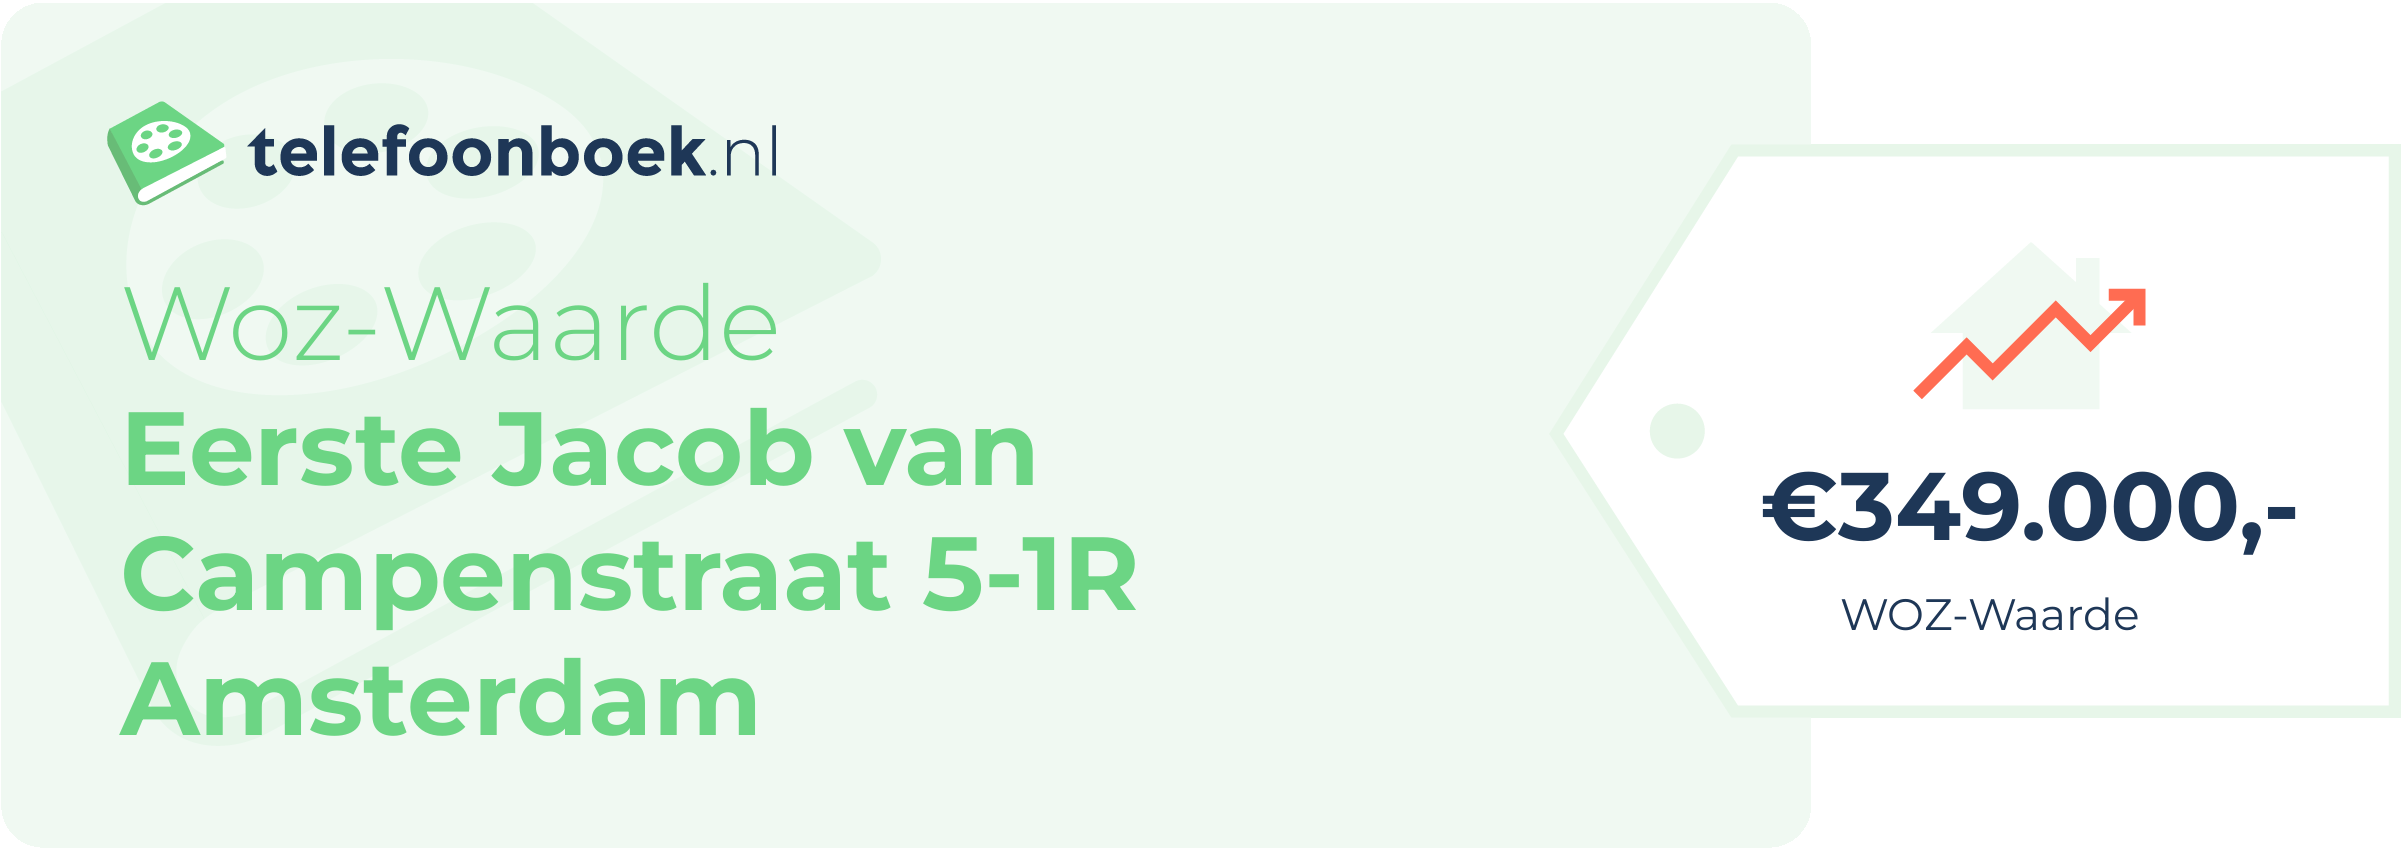 WOZ-waarde Eerste Jacob Van Campenstraat 5-1R Amsterdam